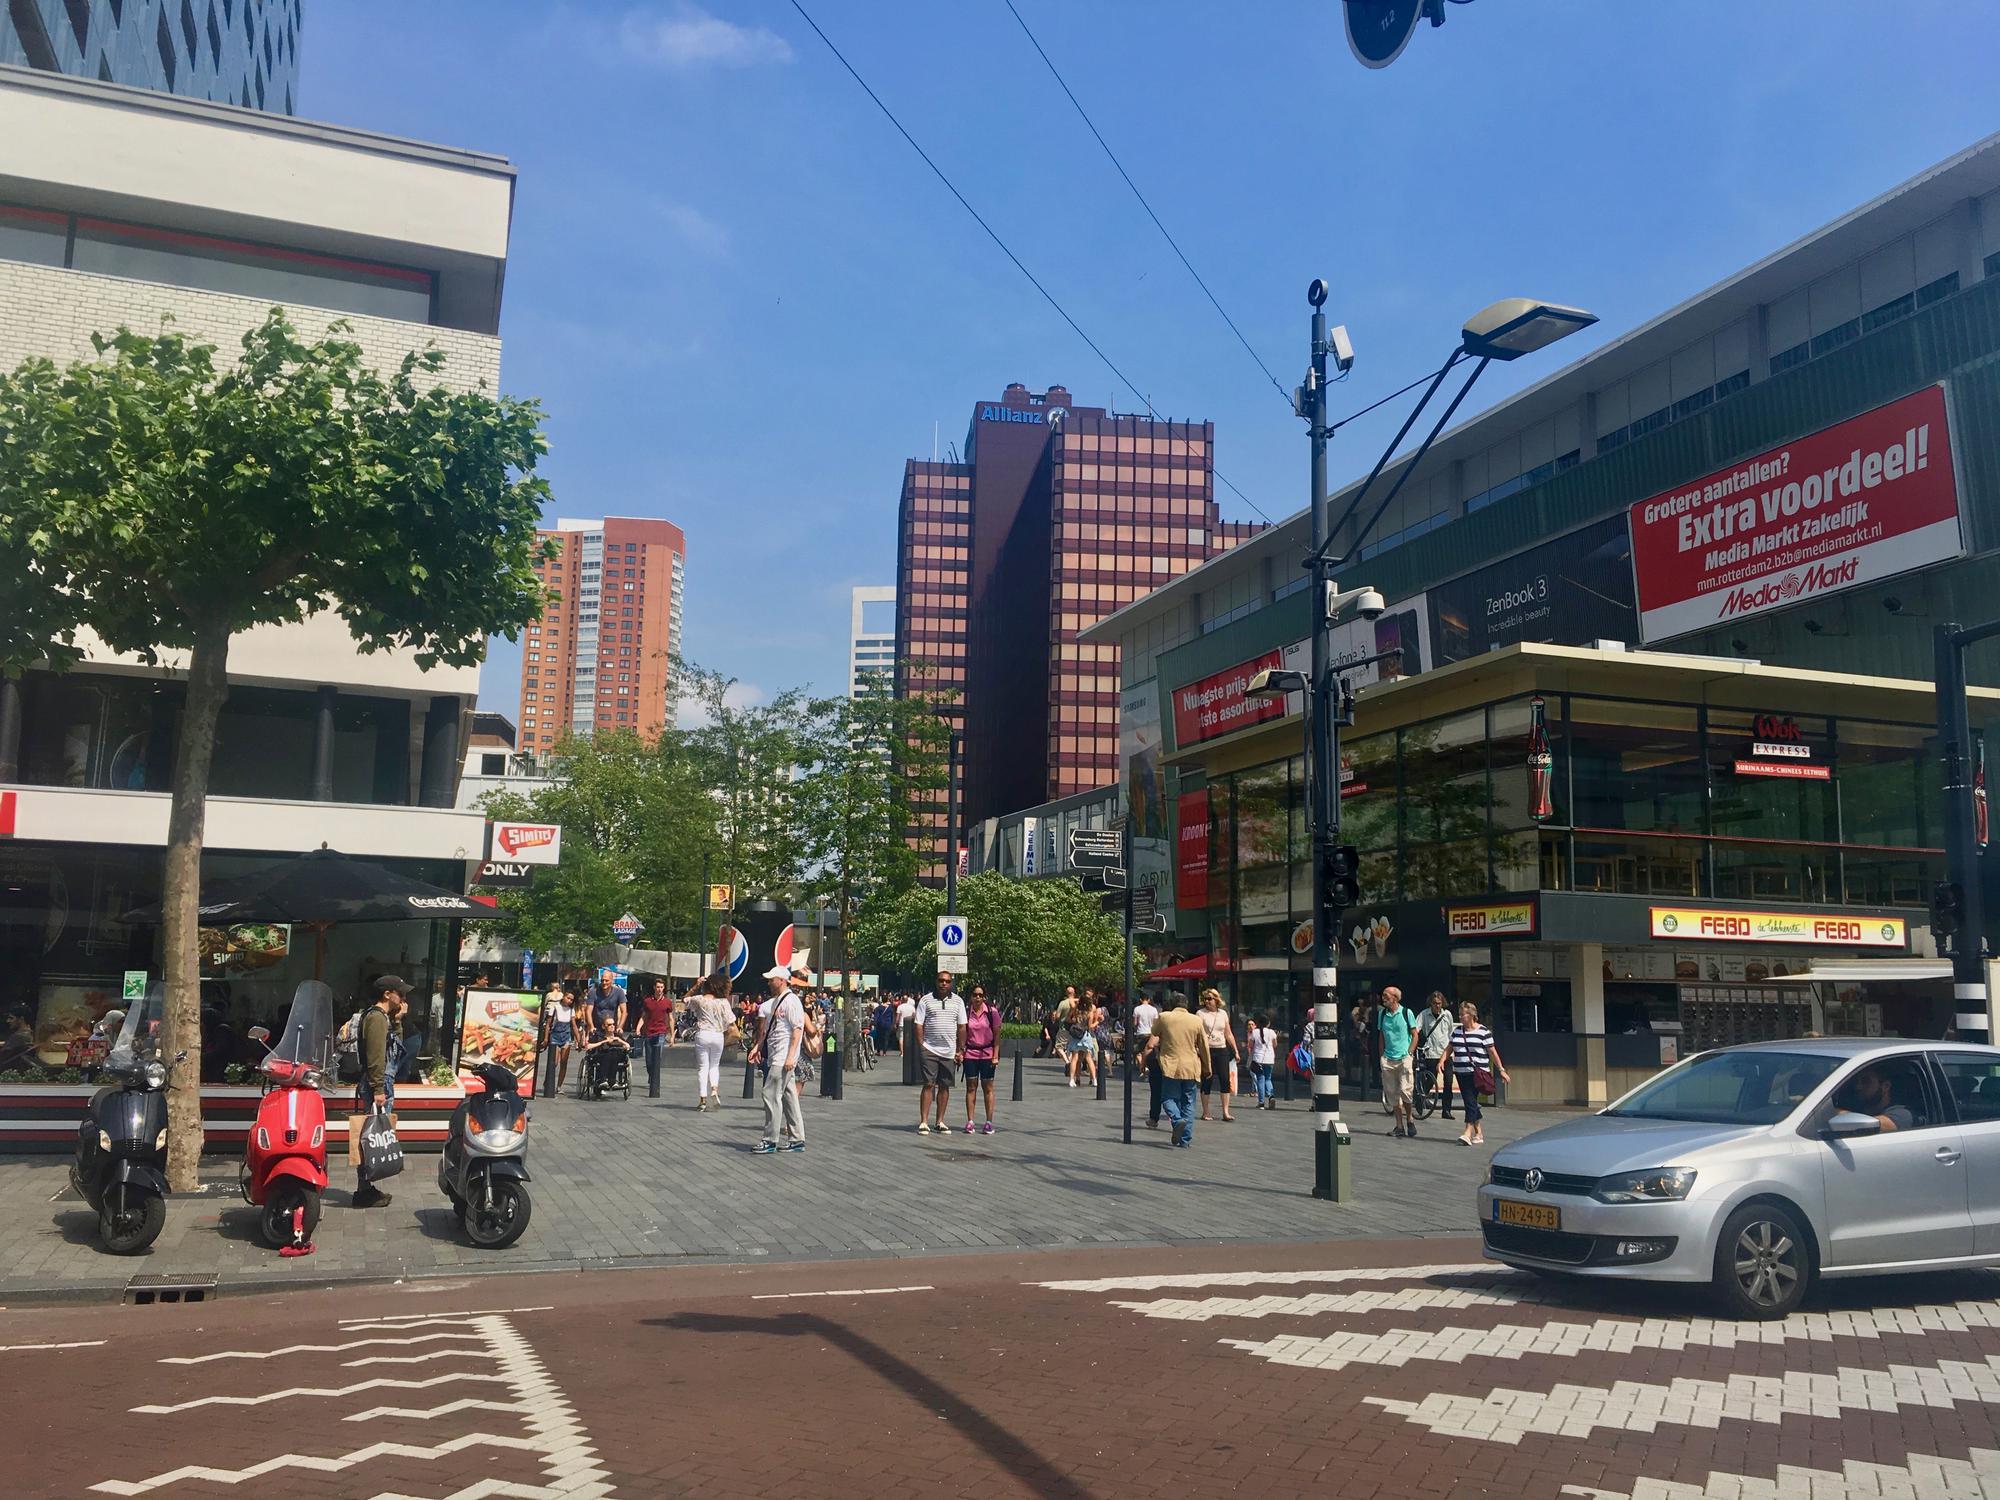 🇳🇱 Rotterdam, Netherlands, July 2017.